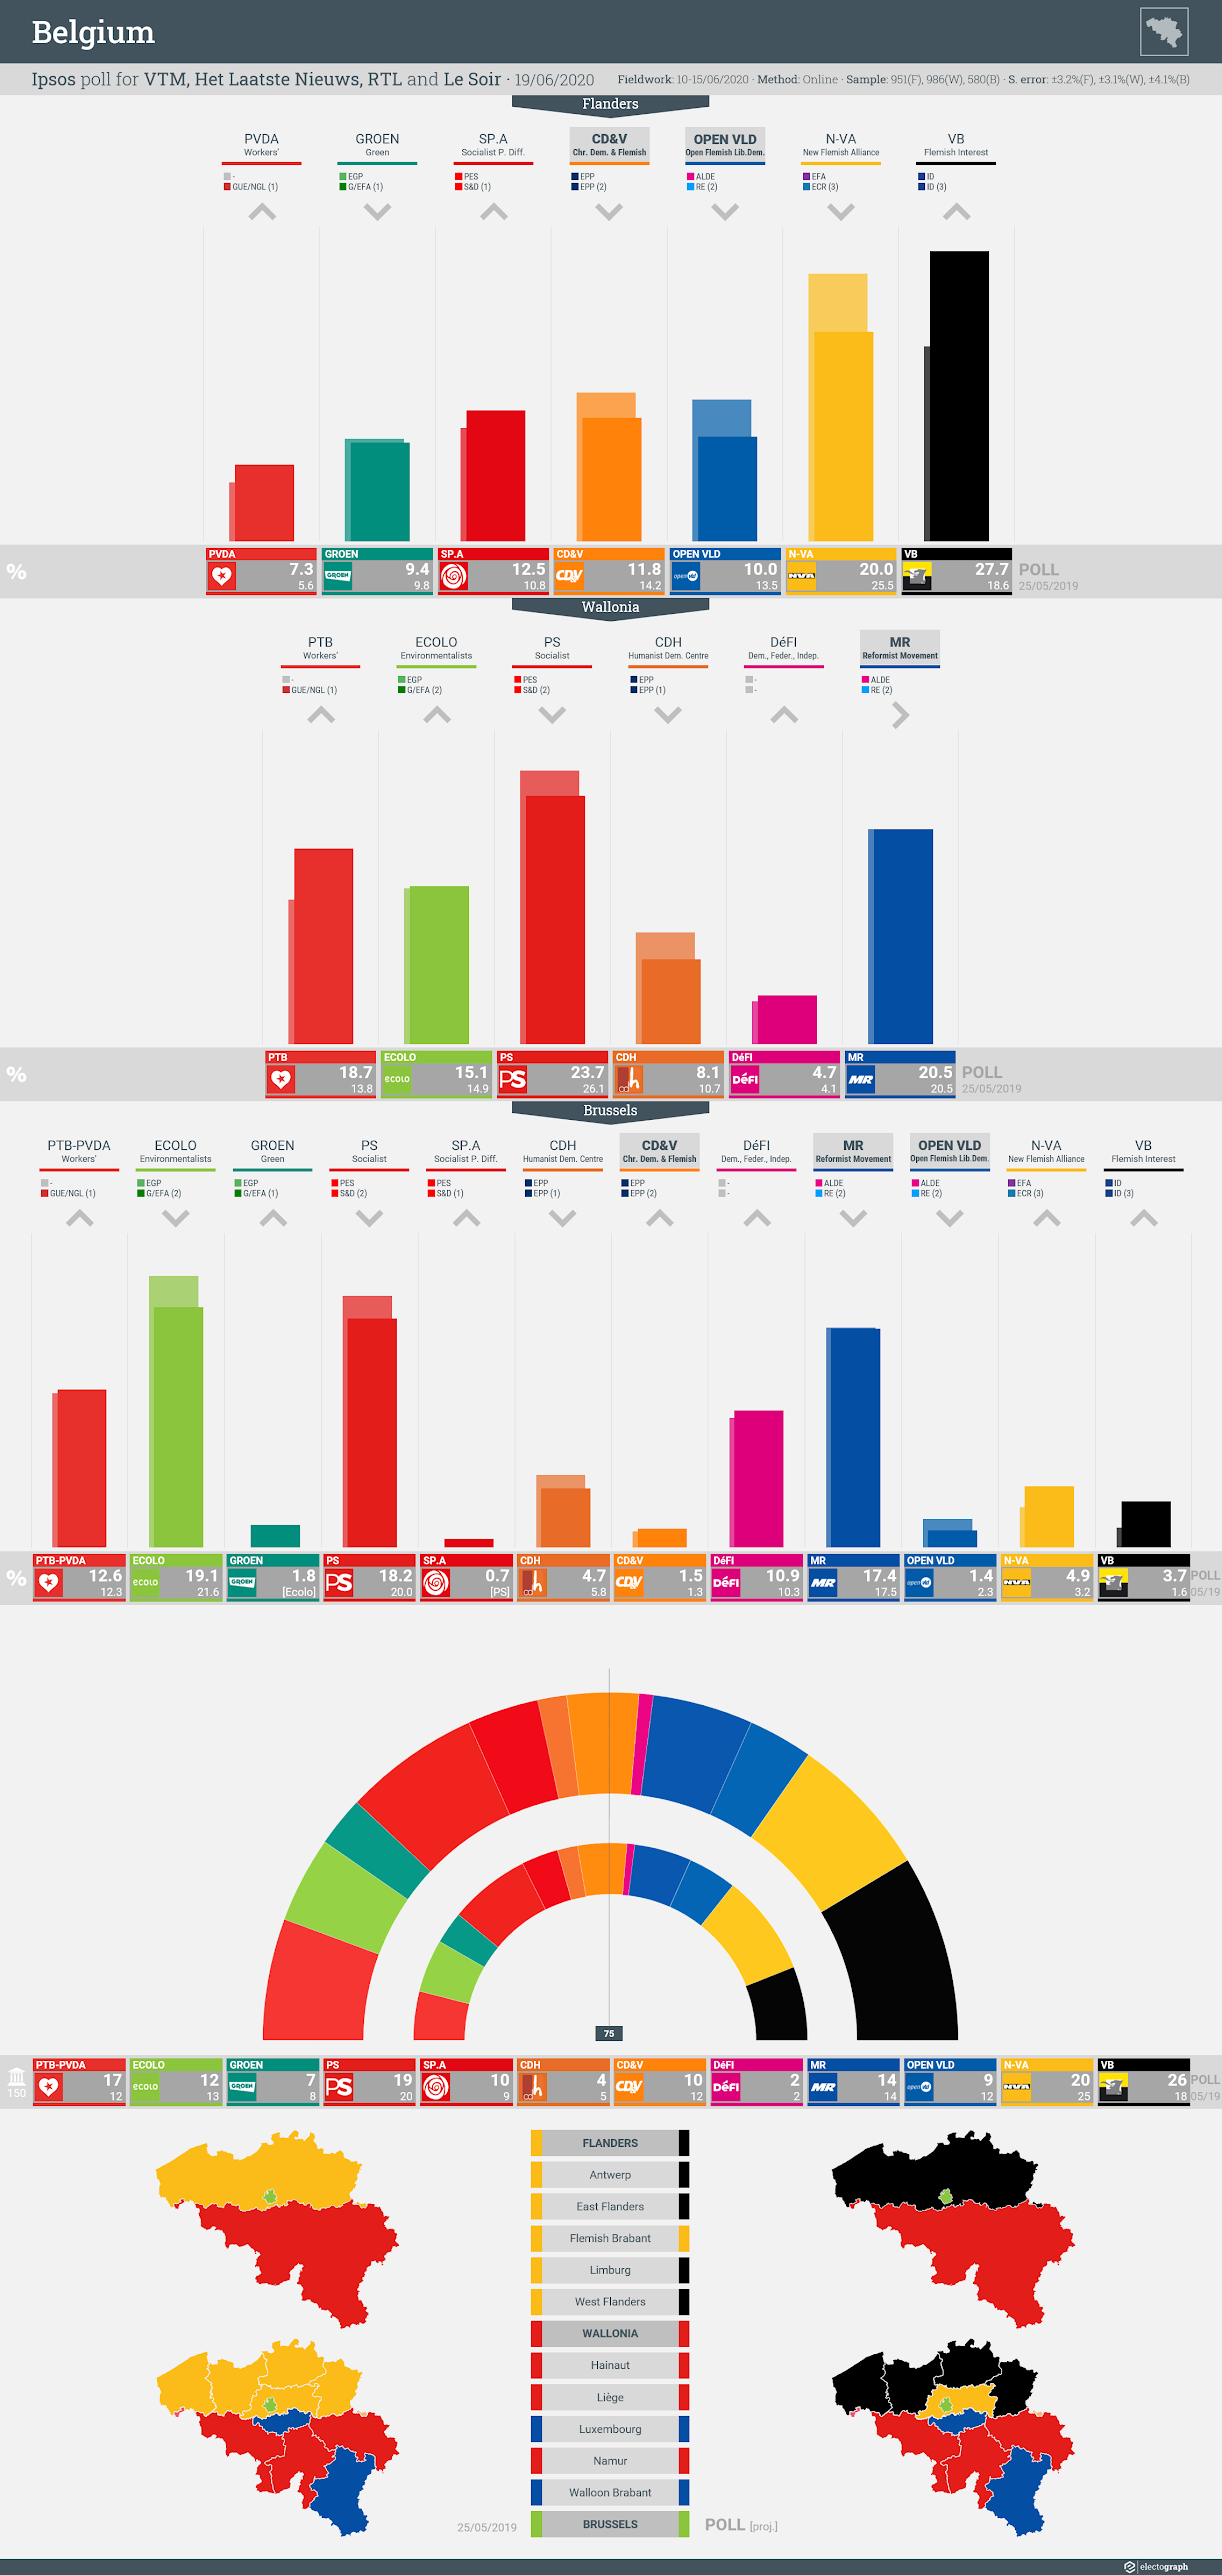 BELGIUM: Ipsos poll chart for VTM, Het Laatste Nieuws, RTL and Le Soir, 19 June 2020